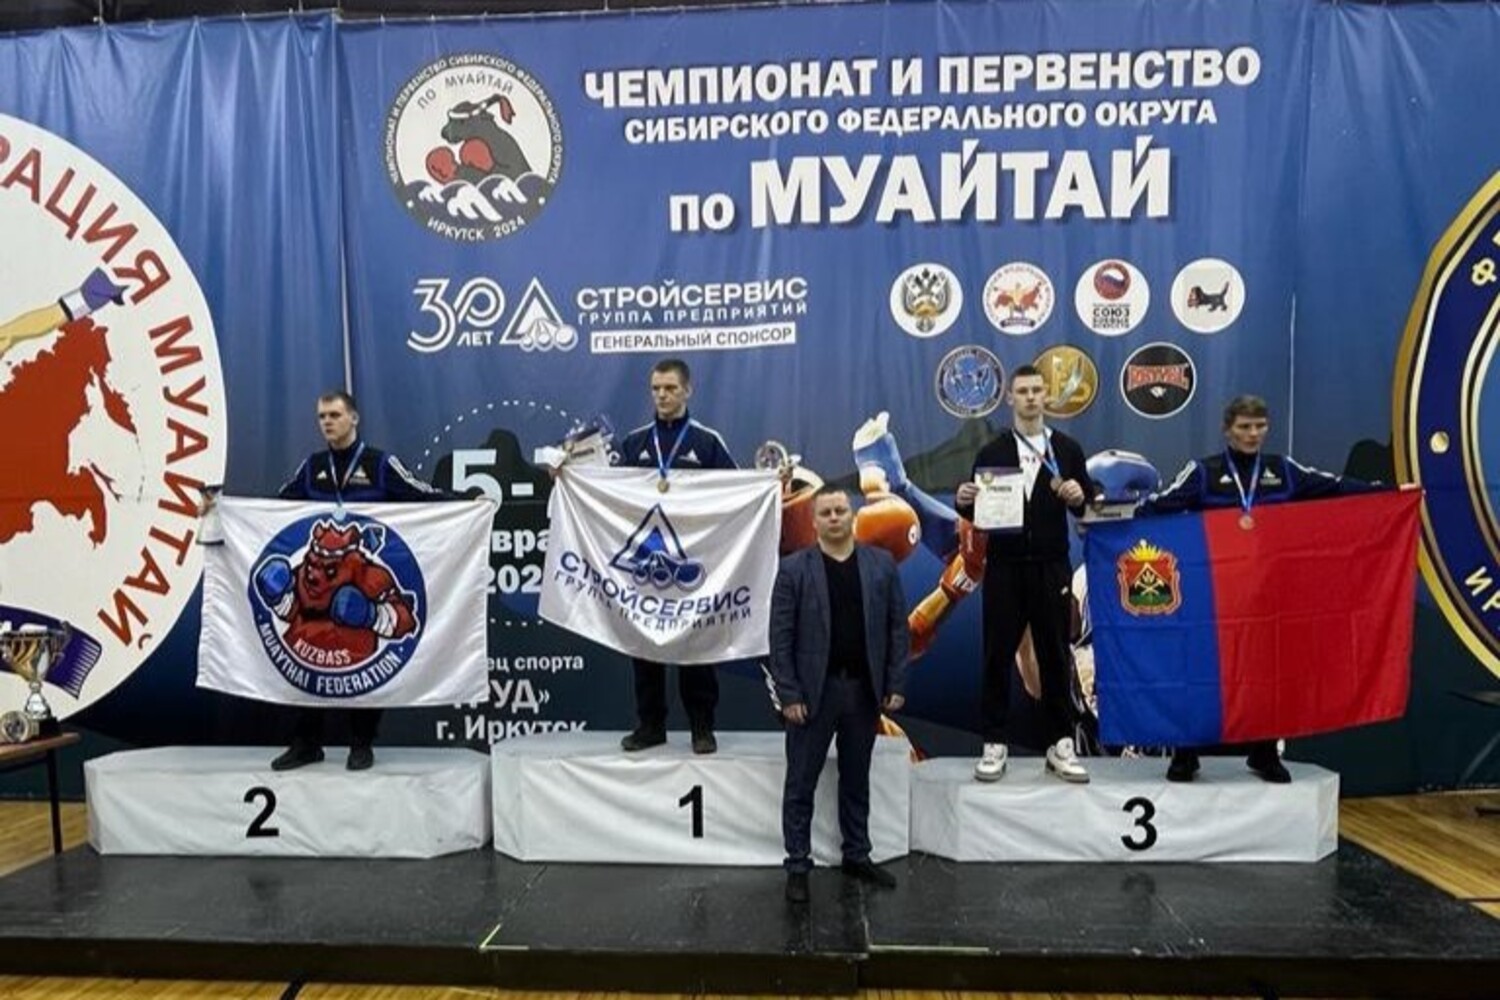 Бойцы муайтай из Кузбасса завоевали 89 медалей в Иркутске и вернулись чемпионами Сибири. Стройсервис